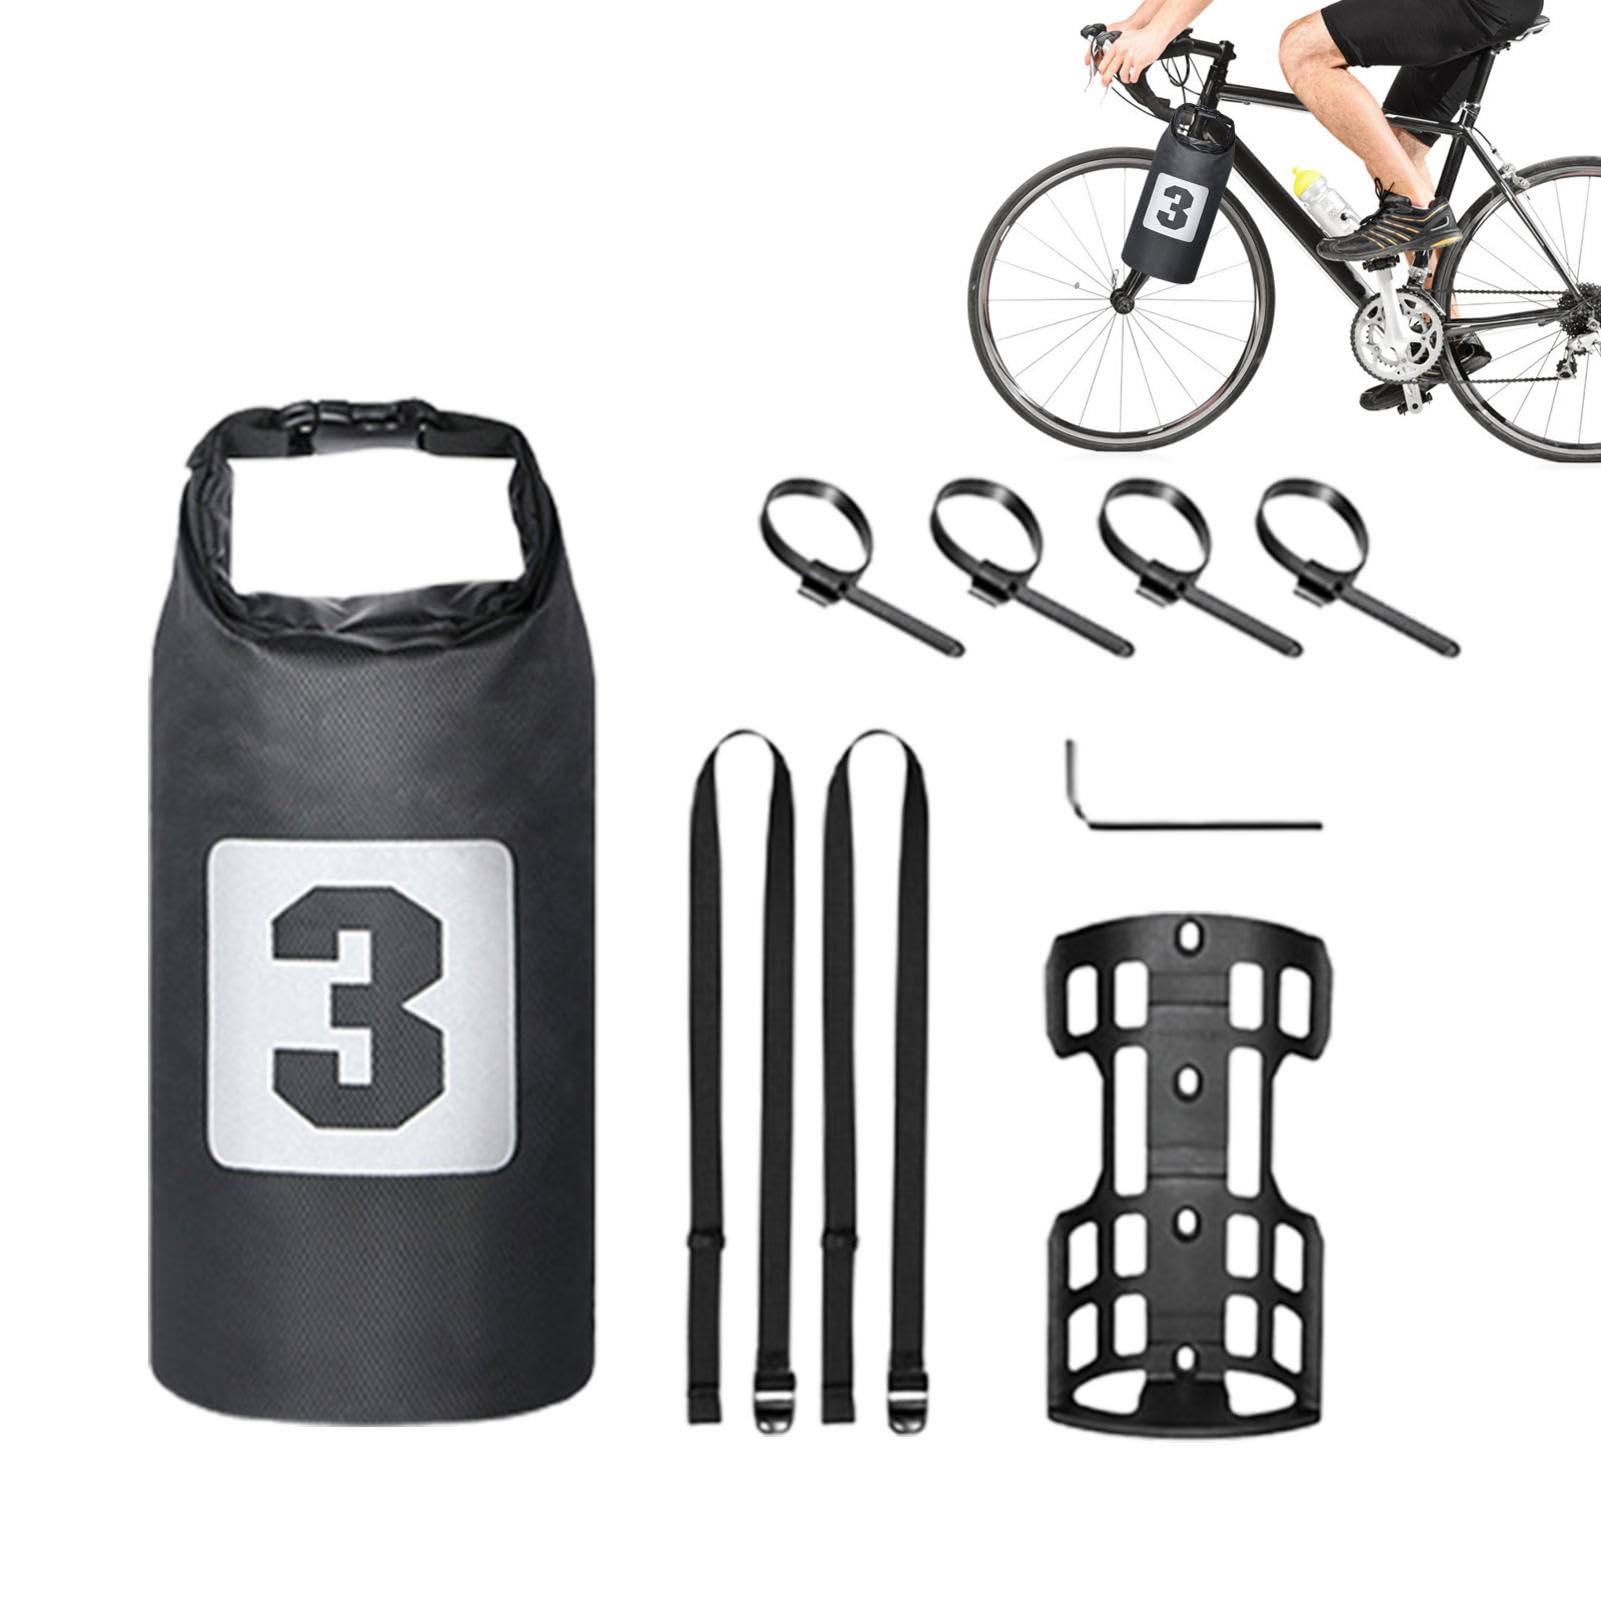 Cyatfcn Fahrrad-Vorderradgabeltaschenhalterung, Fahrradgabeltasche,Tragbarer Fahrradrucksack - Wasserdichter tragbarer Fahrradrucksack für die Vordergabel, wasserdichte Gepäckträgertaschen, kompakte von Cyatfcn